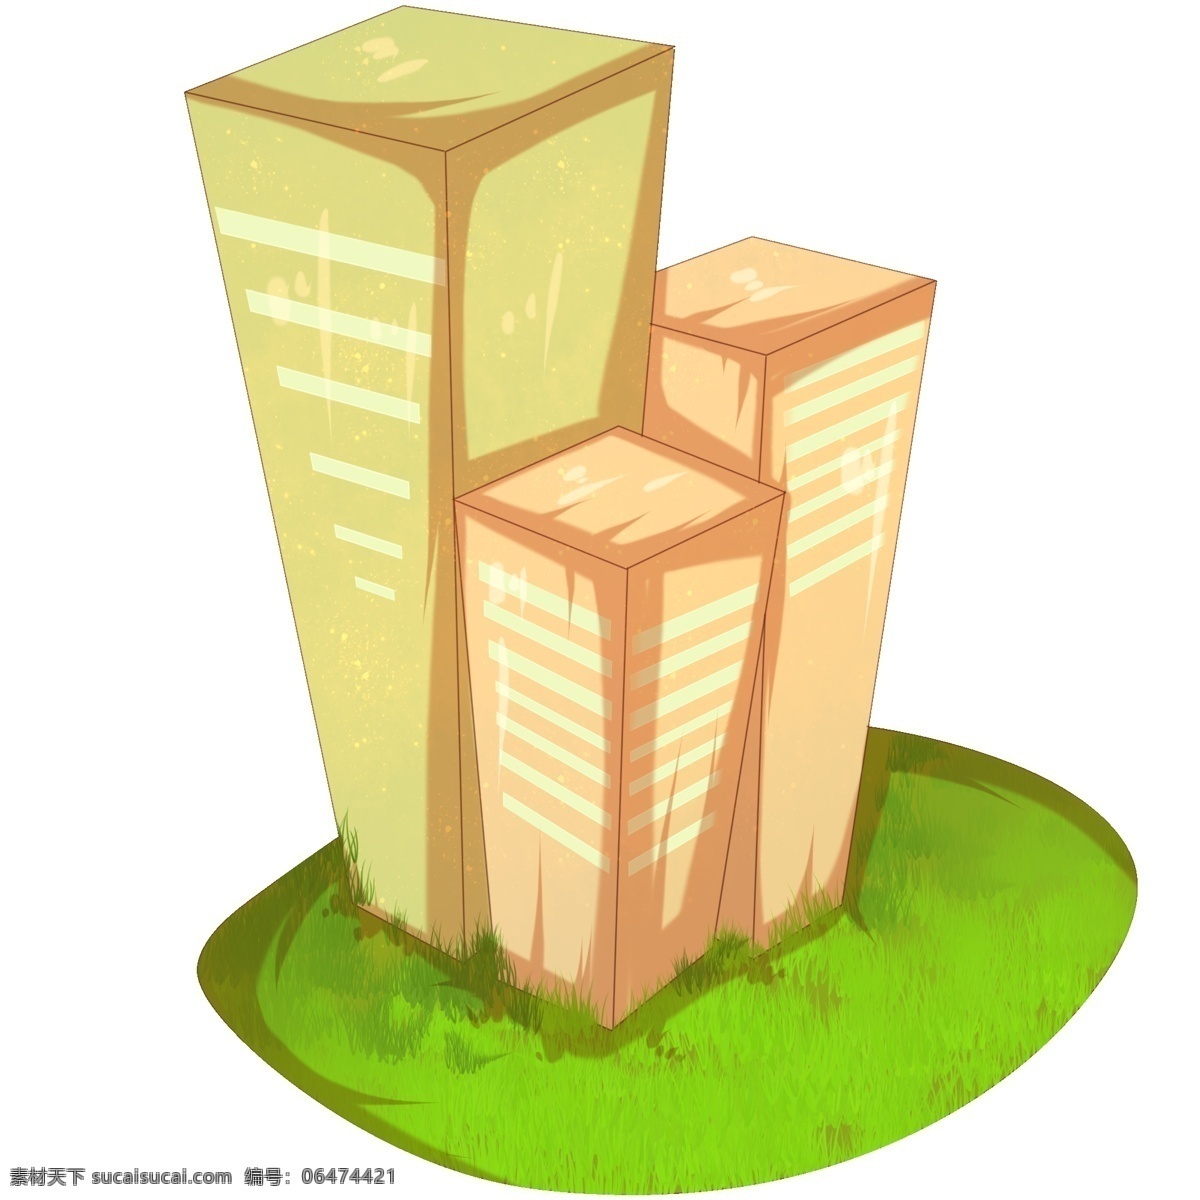 手绘 城市 建筑 插画 绿色的草坪 高大的楼房 漂亮的建筑 卡通插画 手绘建筑插画 城市建筑插画